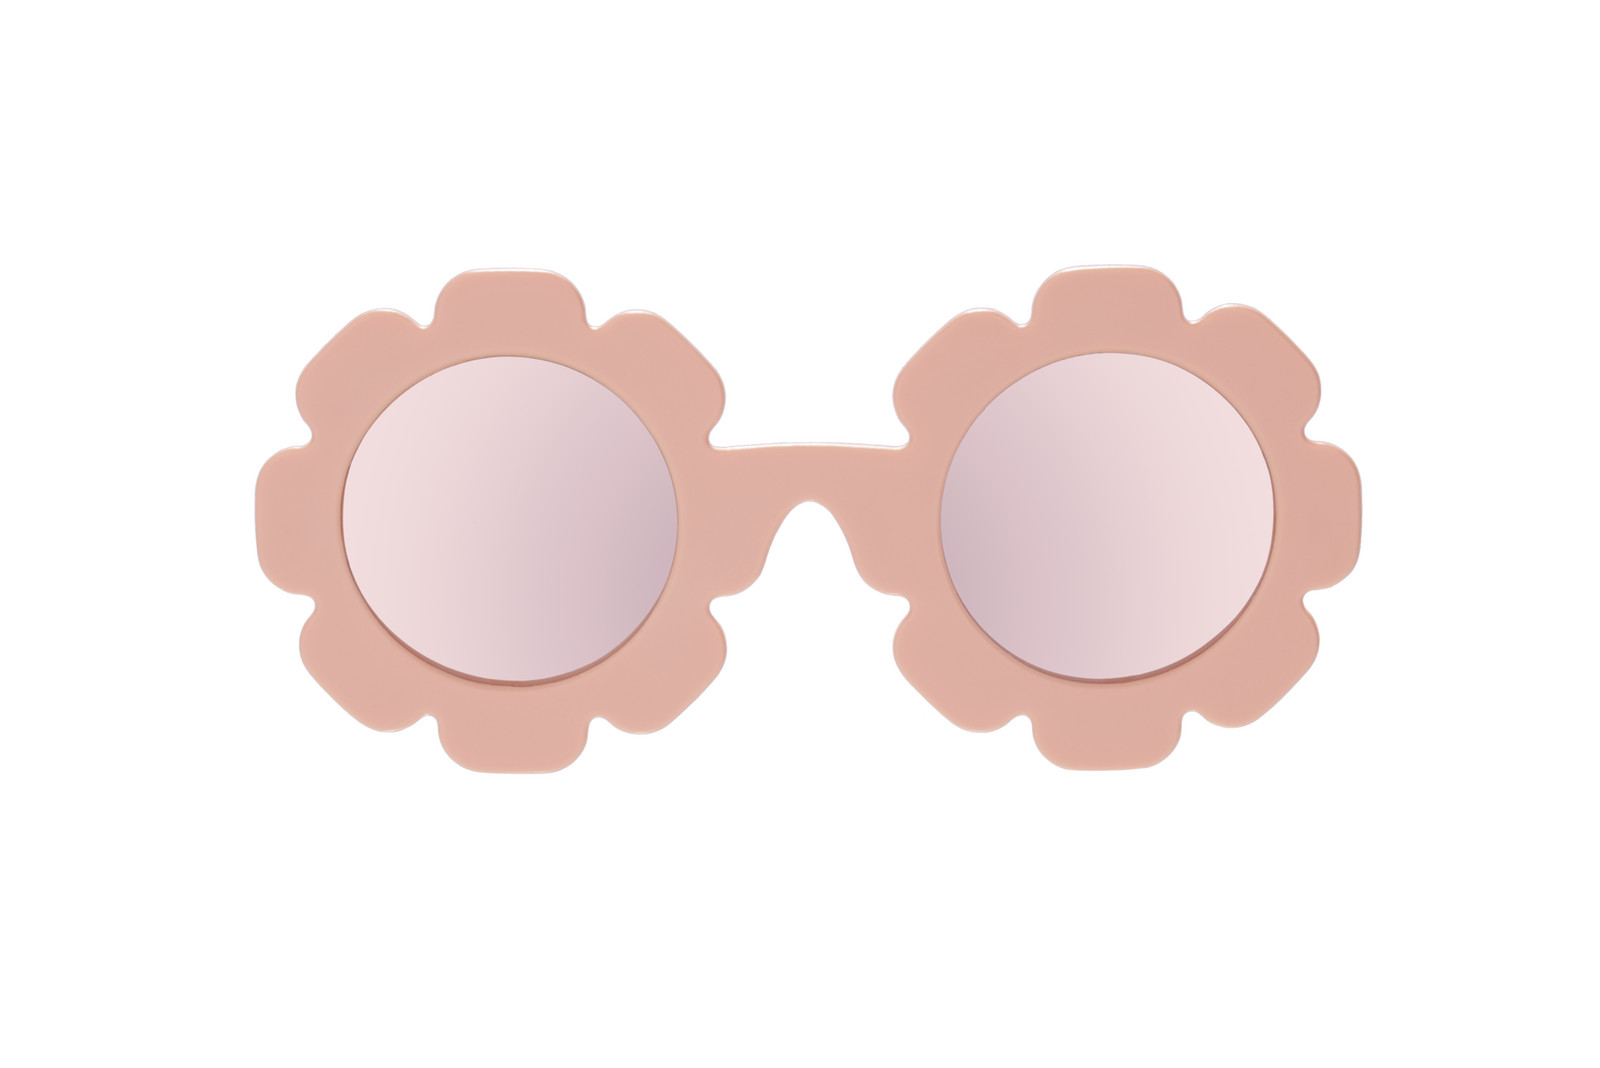 BABIATORS Polarized Flower, Peachy Keen, polarizační zrcadlové sluneční brýle broskvové,  6+